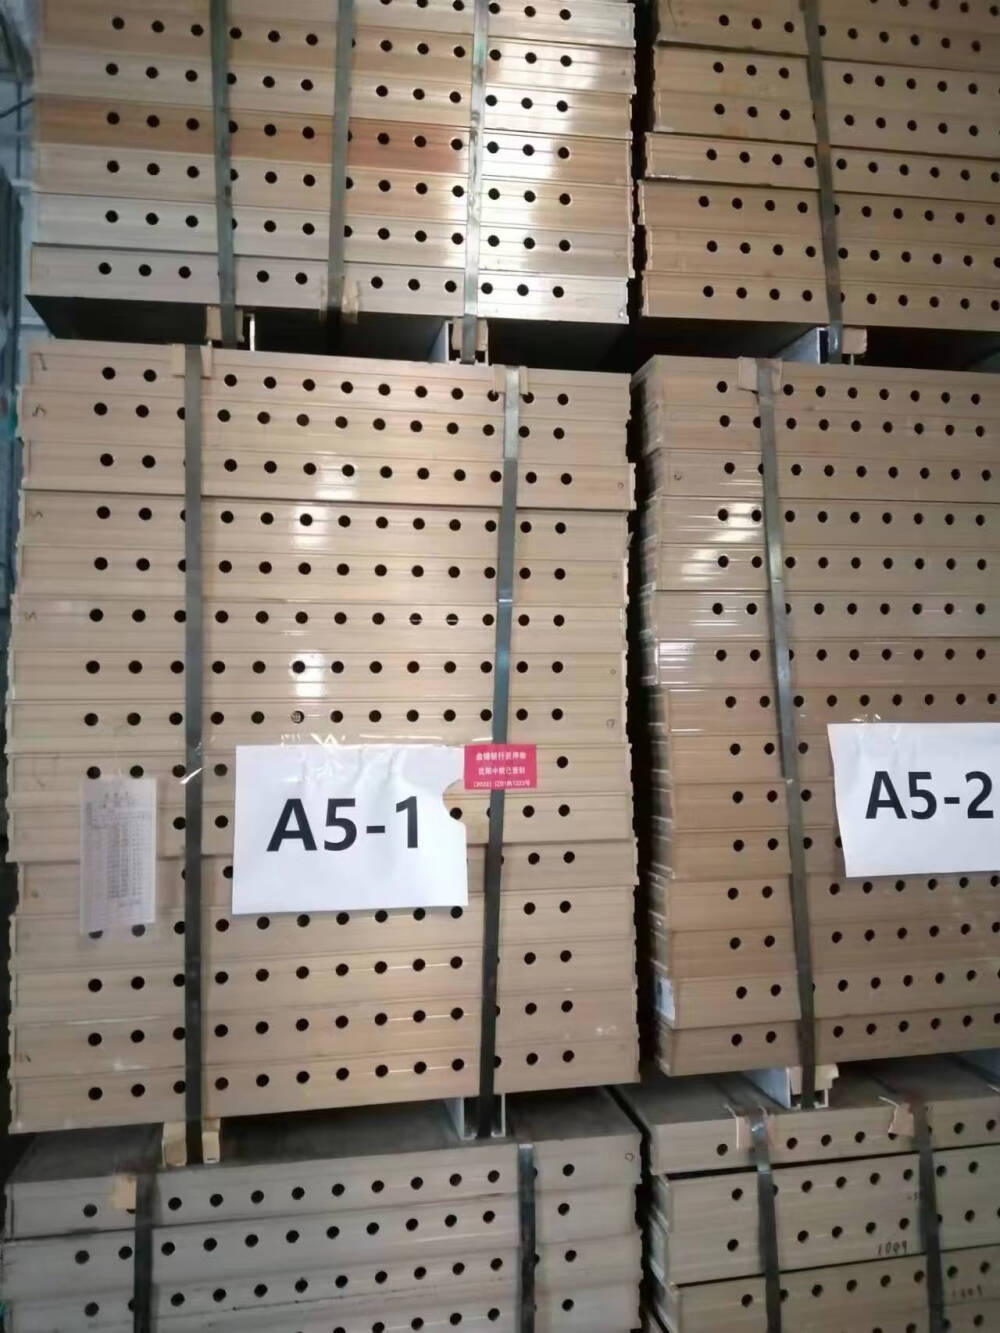 众达鑫工业园882.81吨铝模板 型材网络拍卖公告